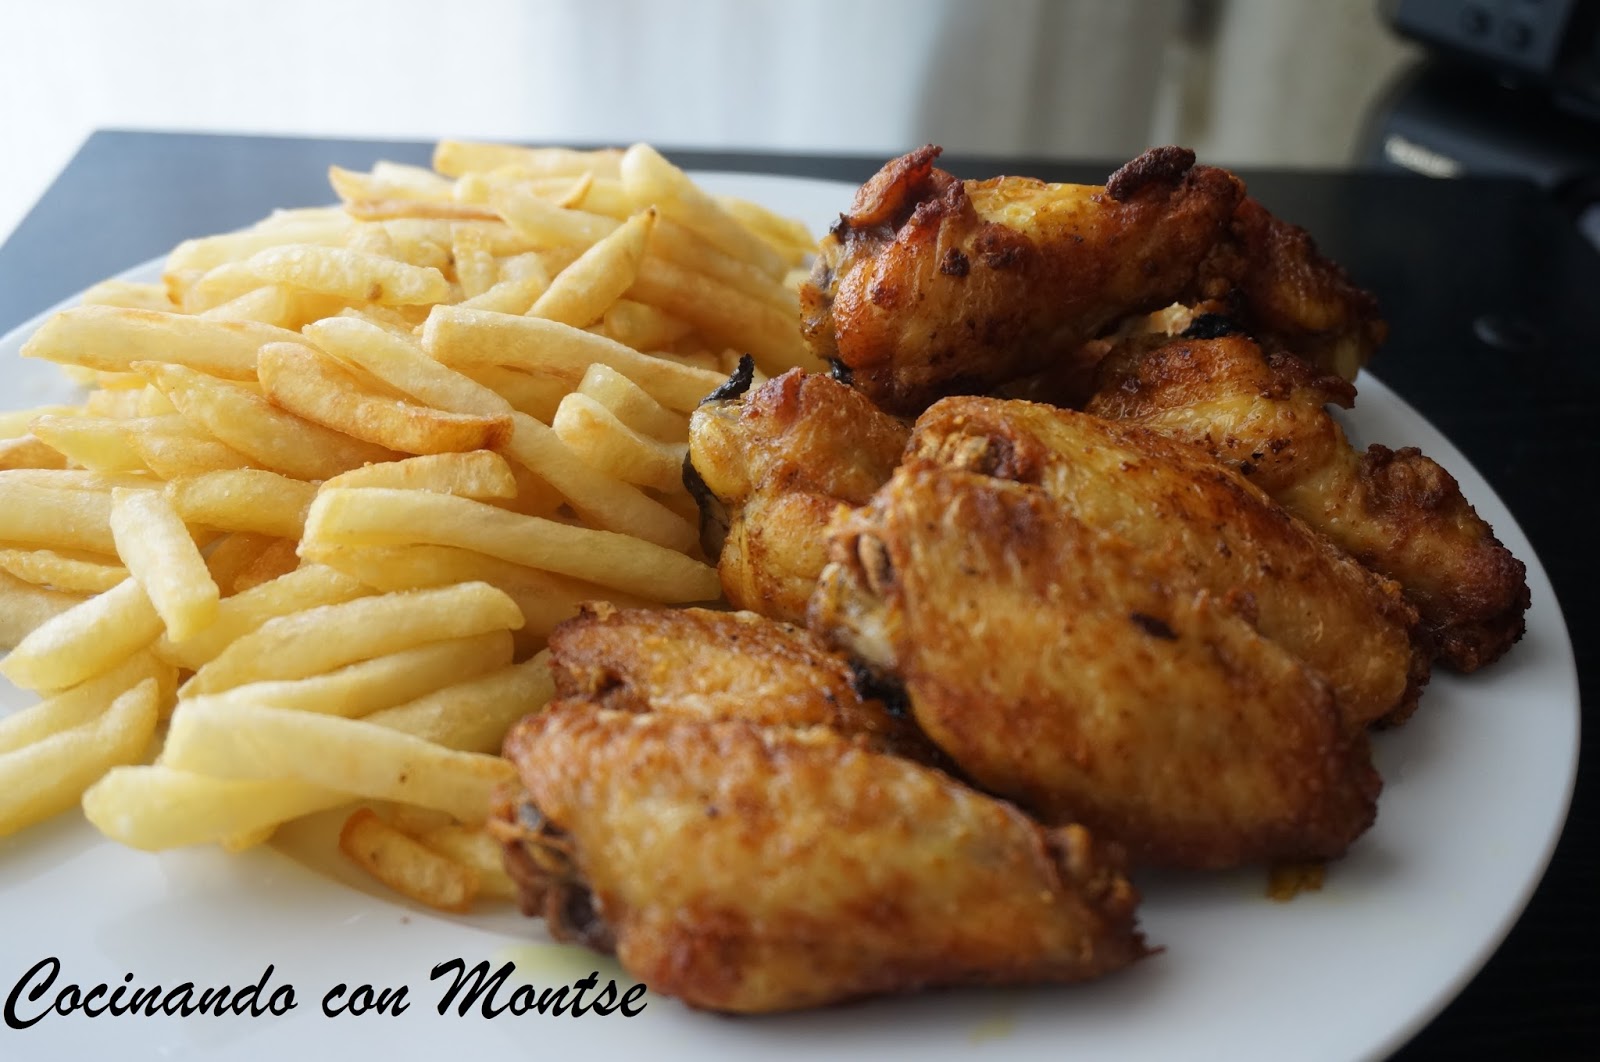 Cocinando con Montse: Alitas de pollo fritas